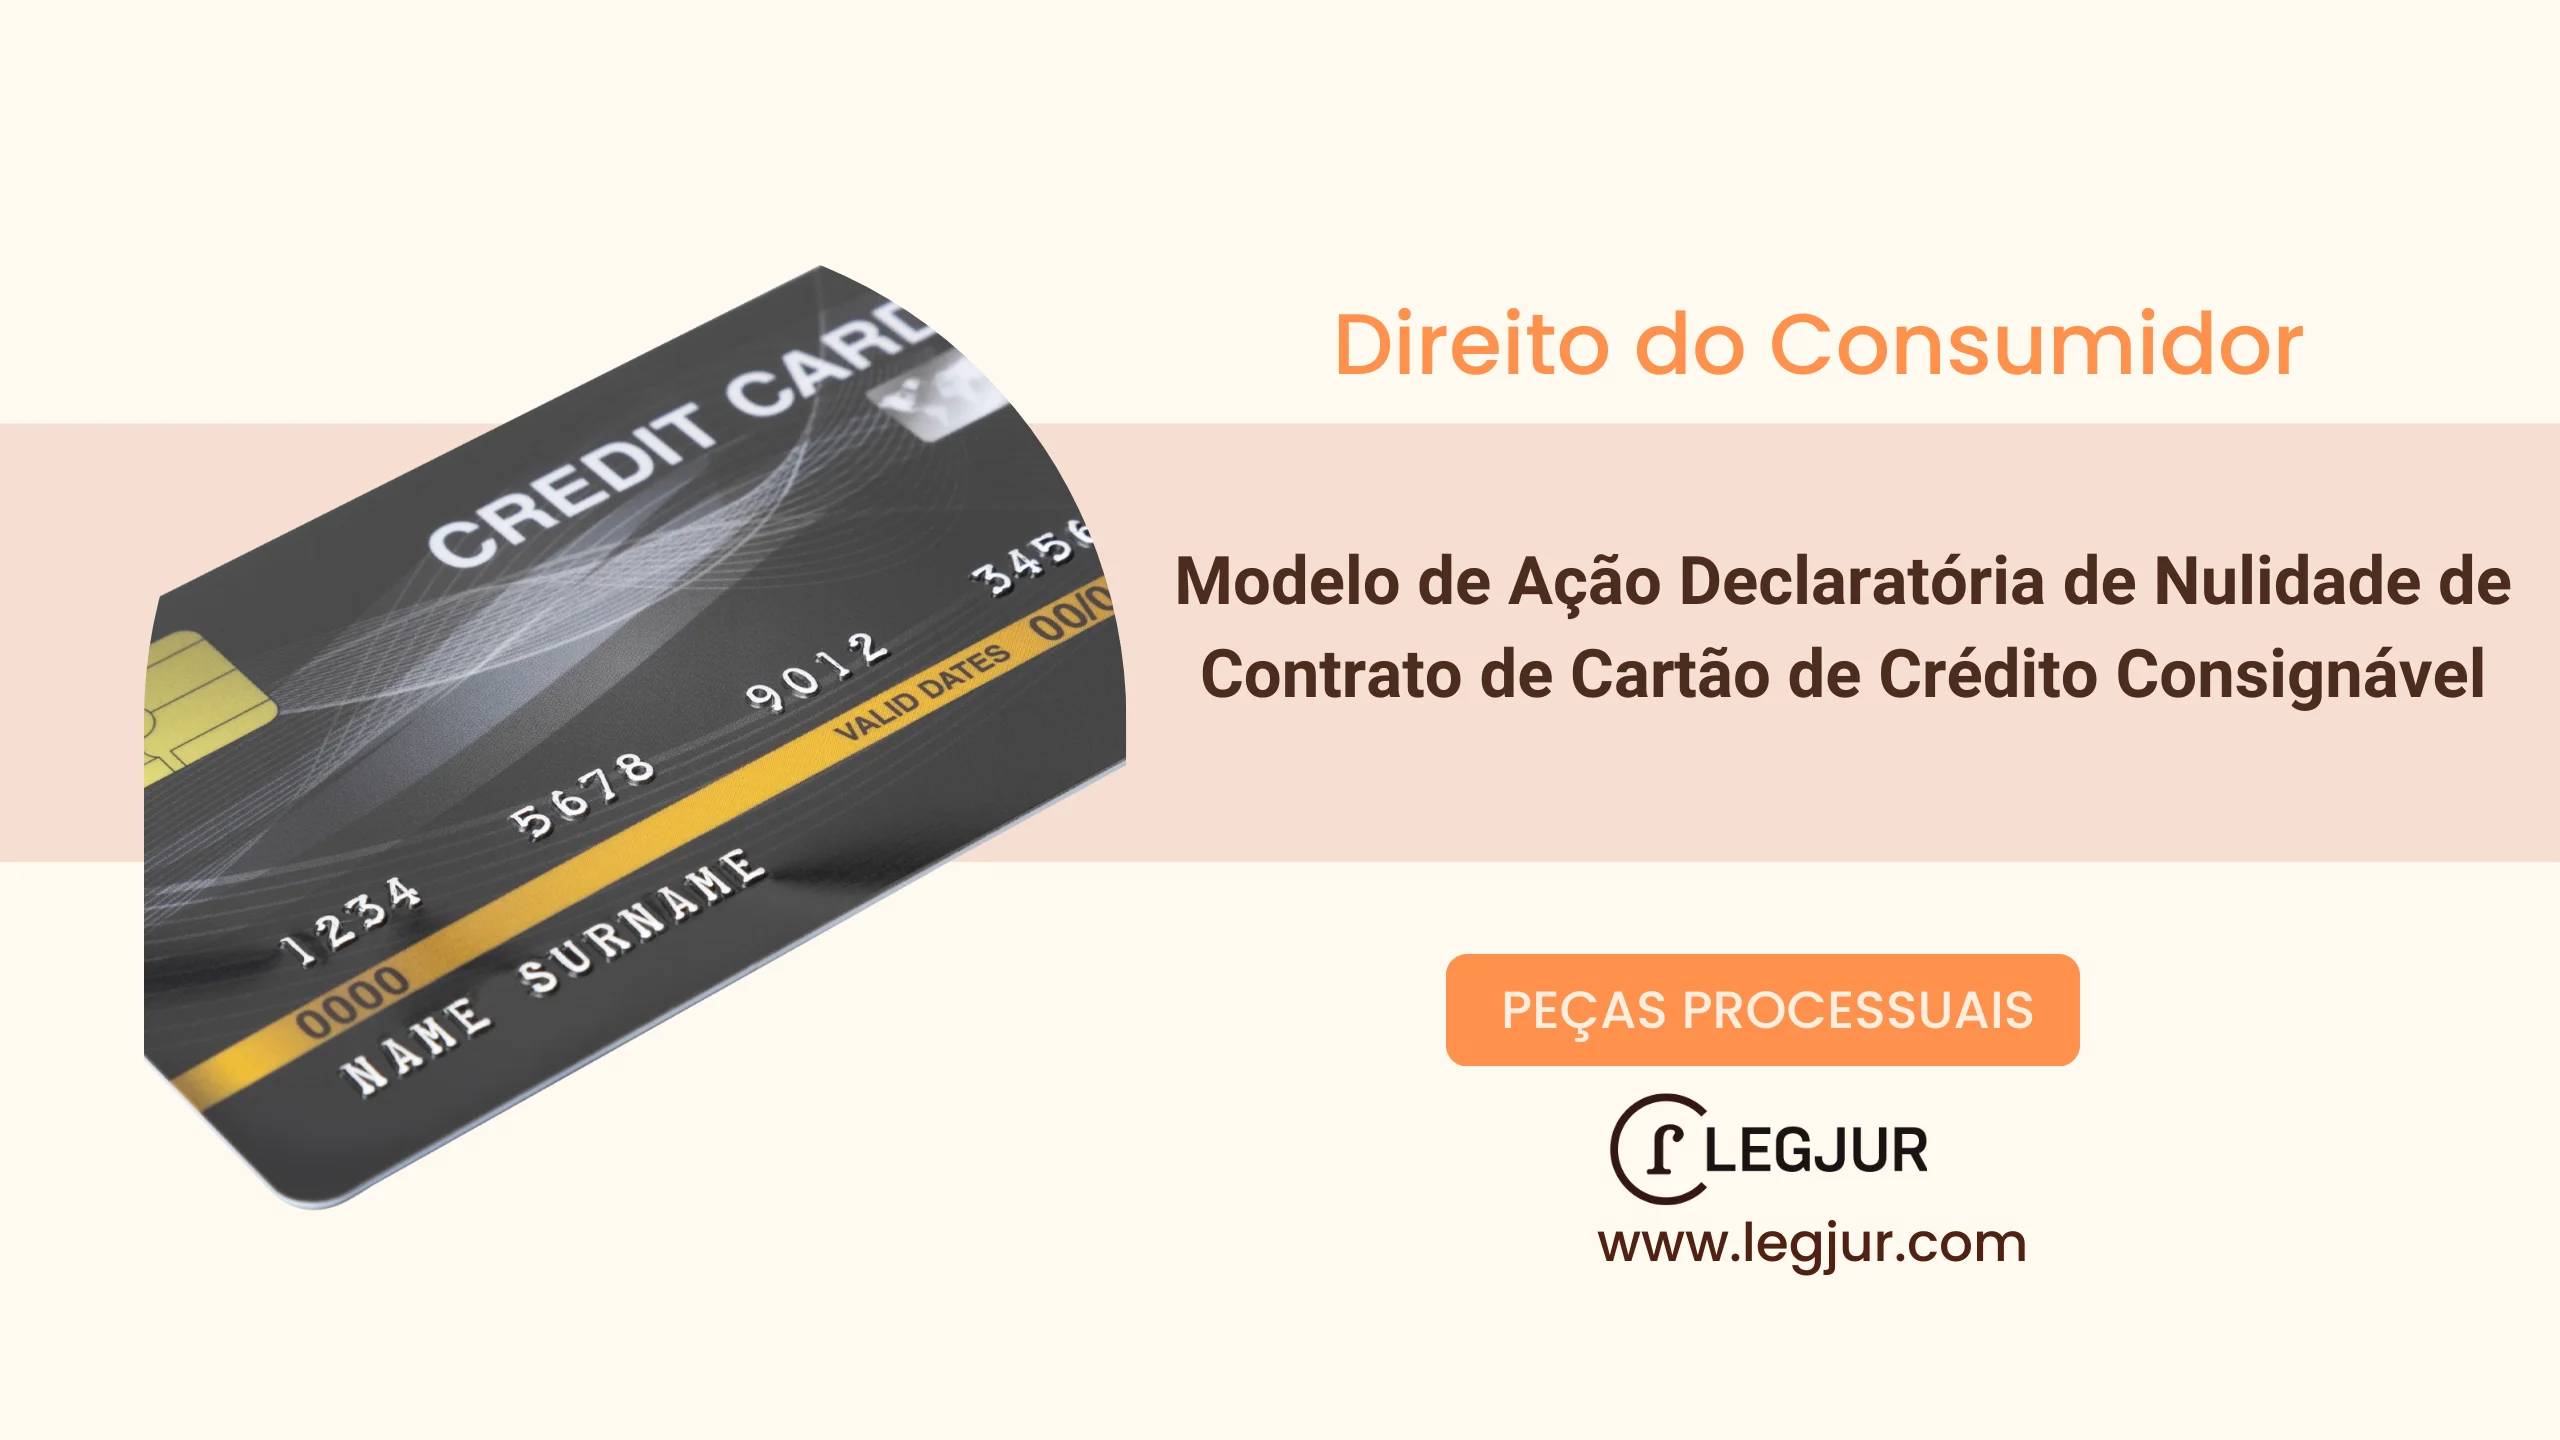 Modelo de Ação Declaratória de Nulidade de Contrato de Cartão de Crédito Consignável